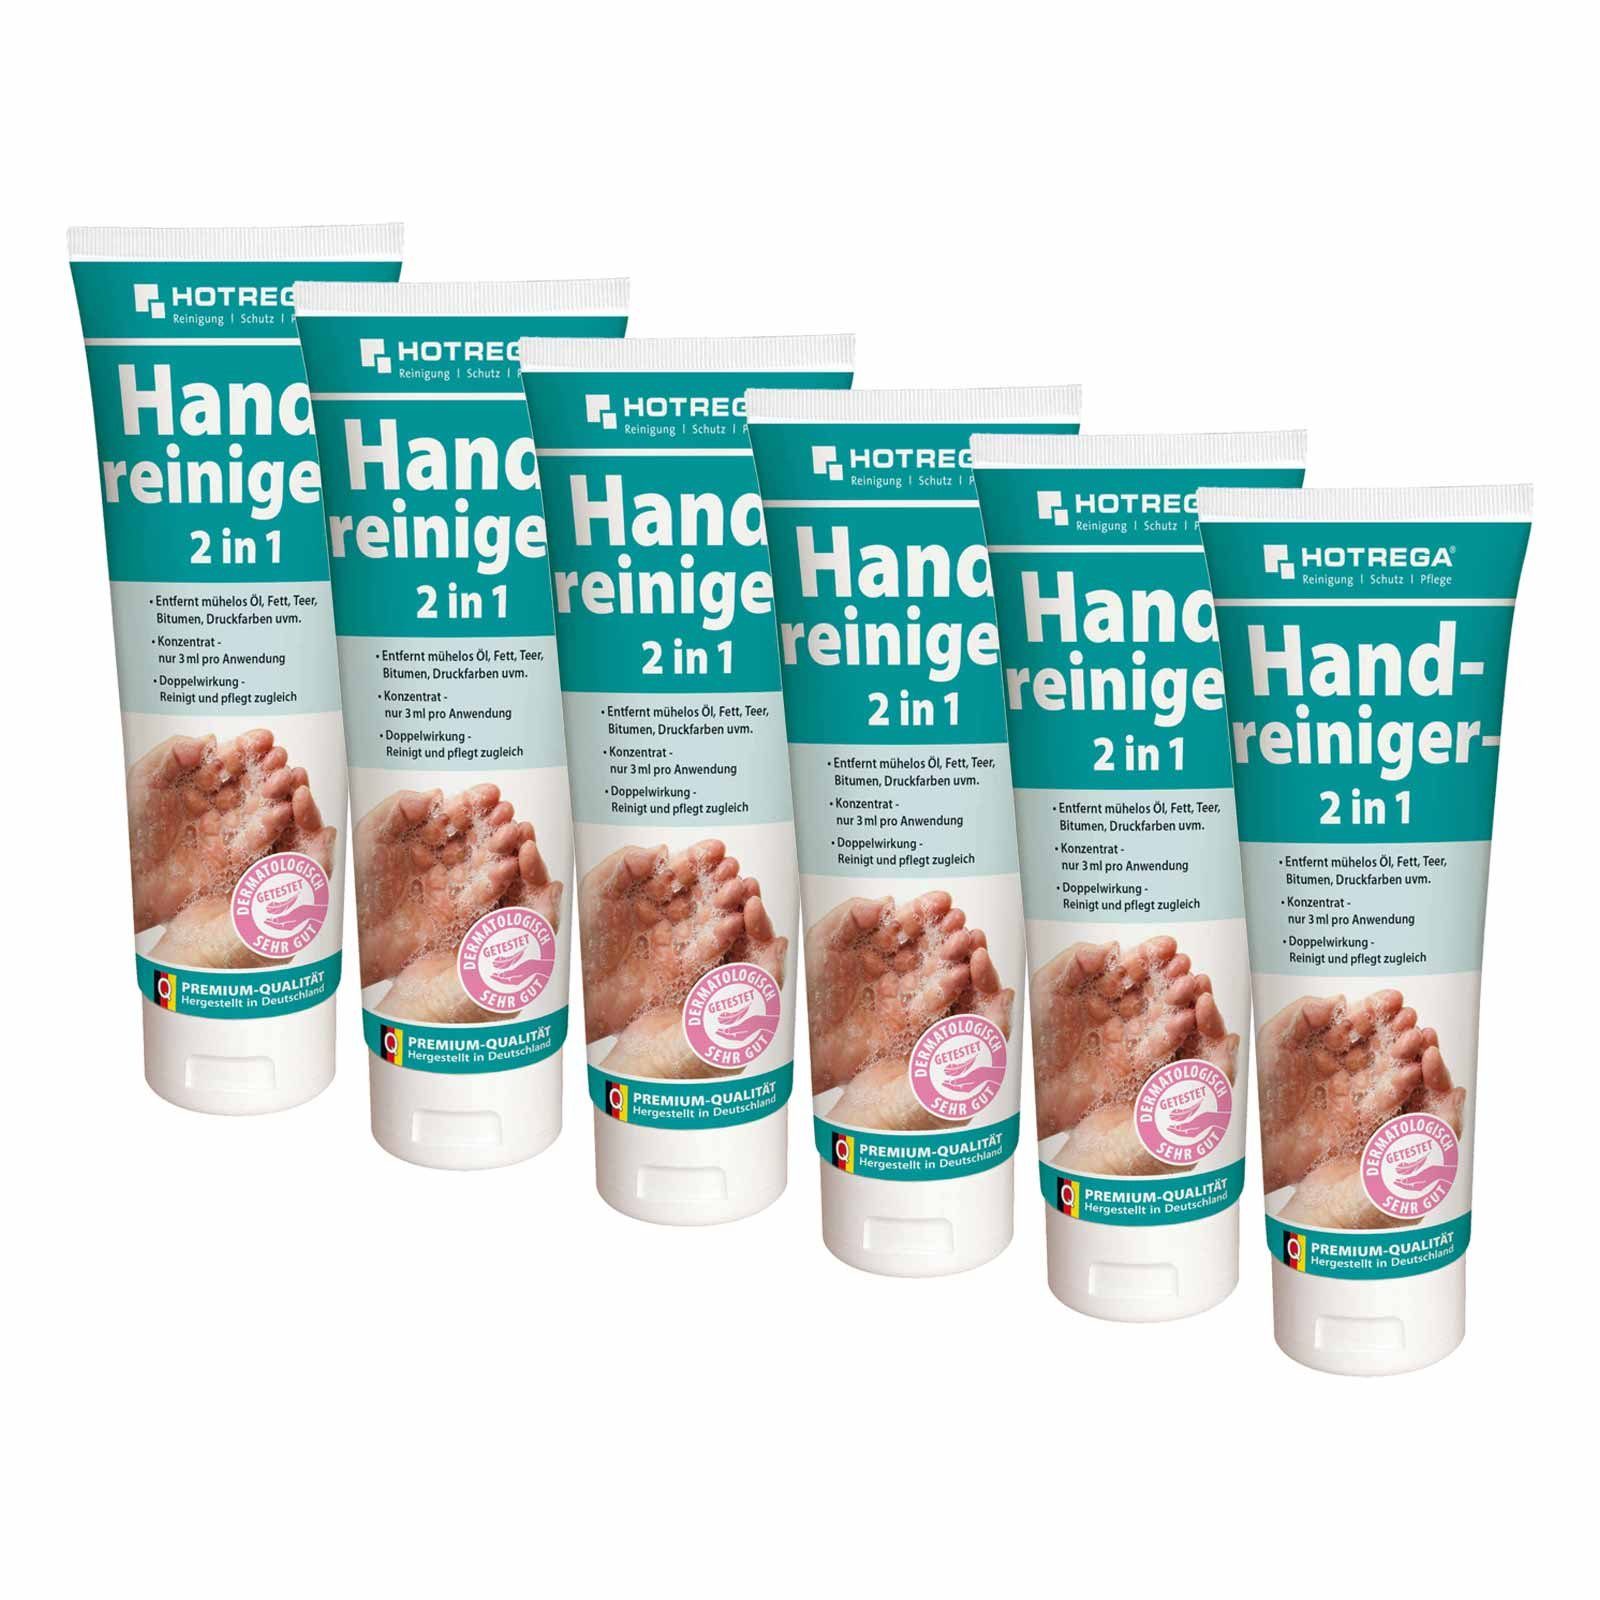 HOTREGA® Handcreme Handreiniger Handwaschpaste Hautreiniger Hautpflege 2in1 6x 250ml Tube